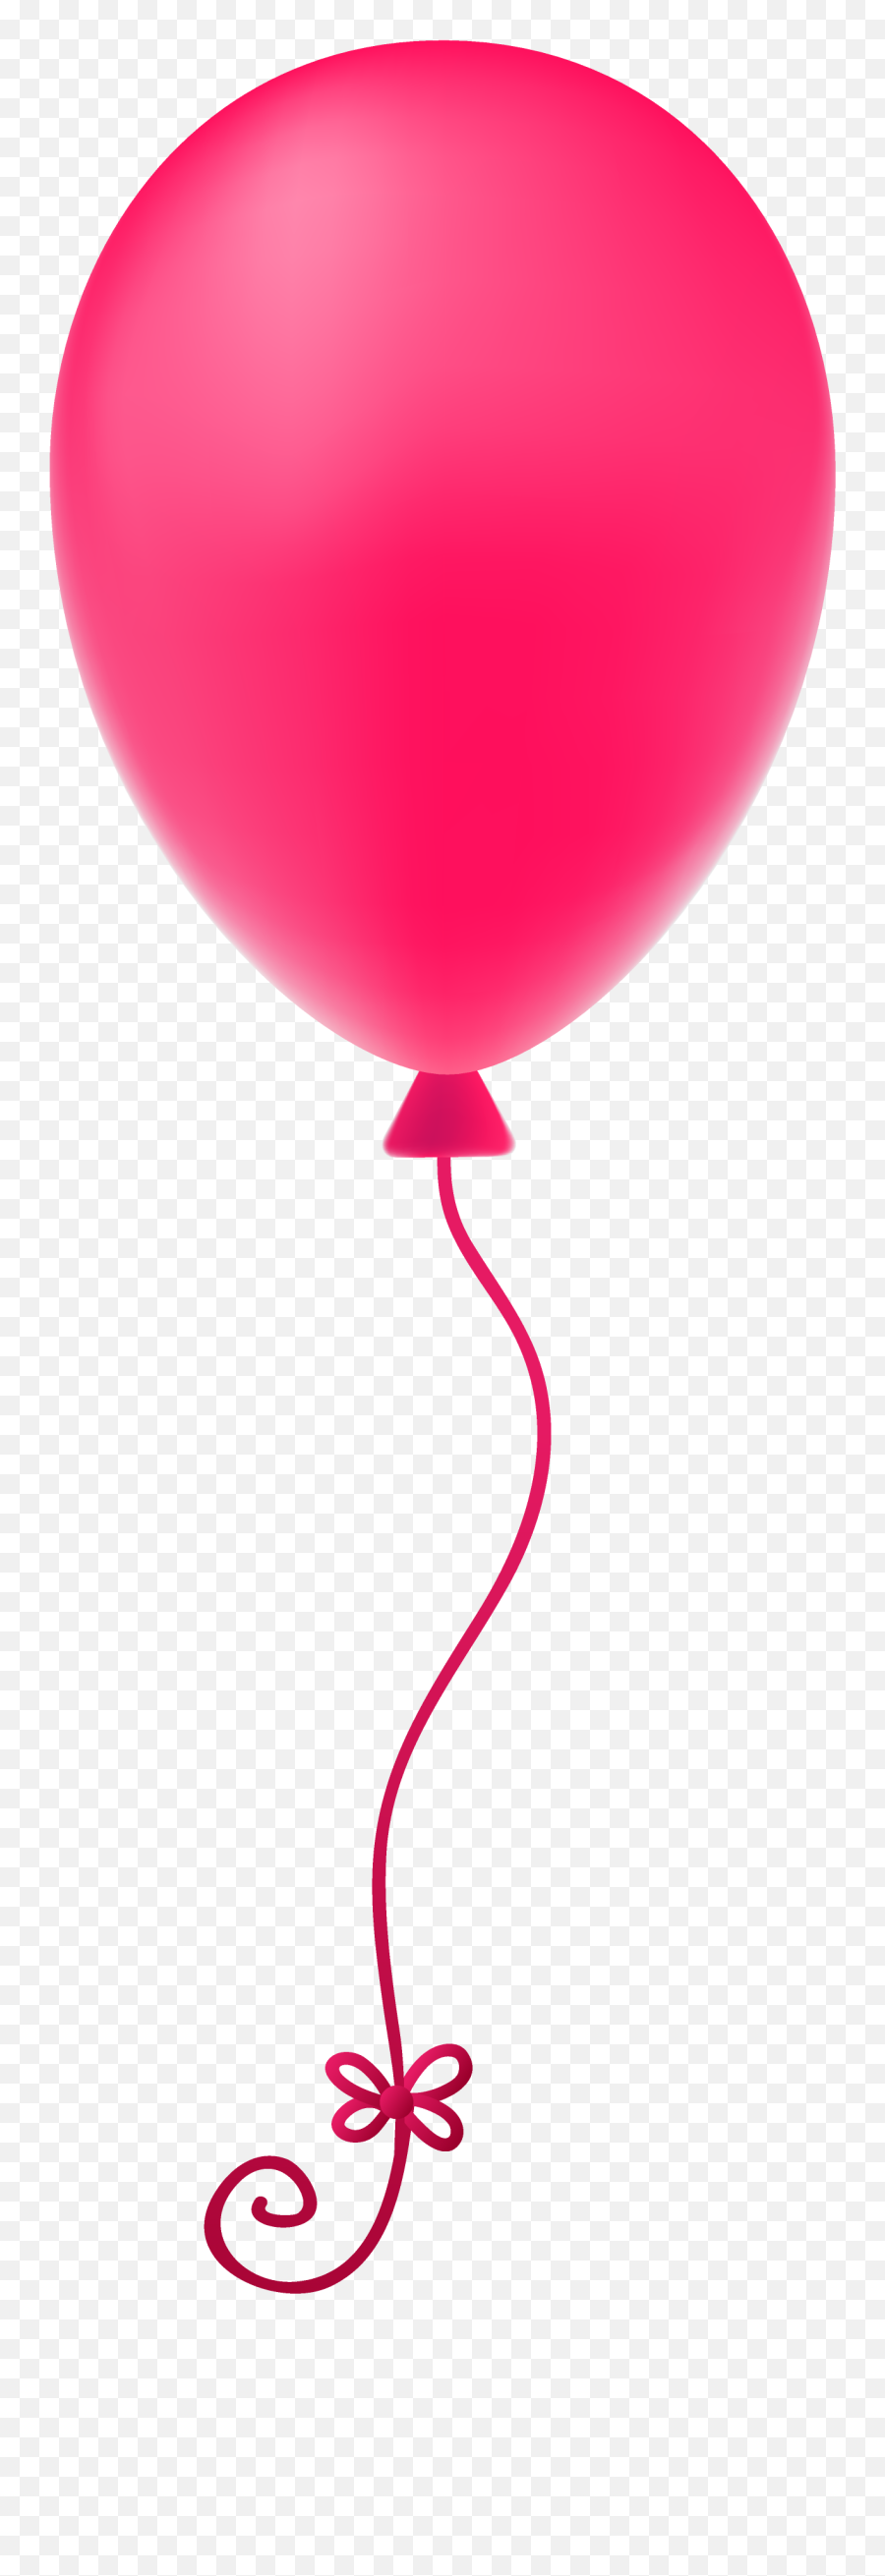 Pink Balloon Png Image - Transparent Background Gif Balloon Emoji,Pink Png